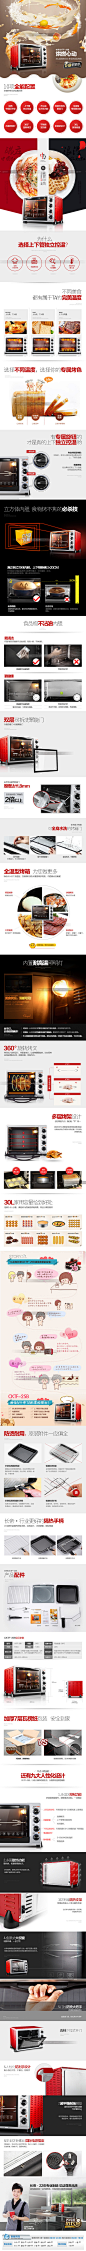 长帝 CKTF-25B上下管独立控温多功能烘焙电烤箱 家用30升特价正品